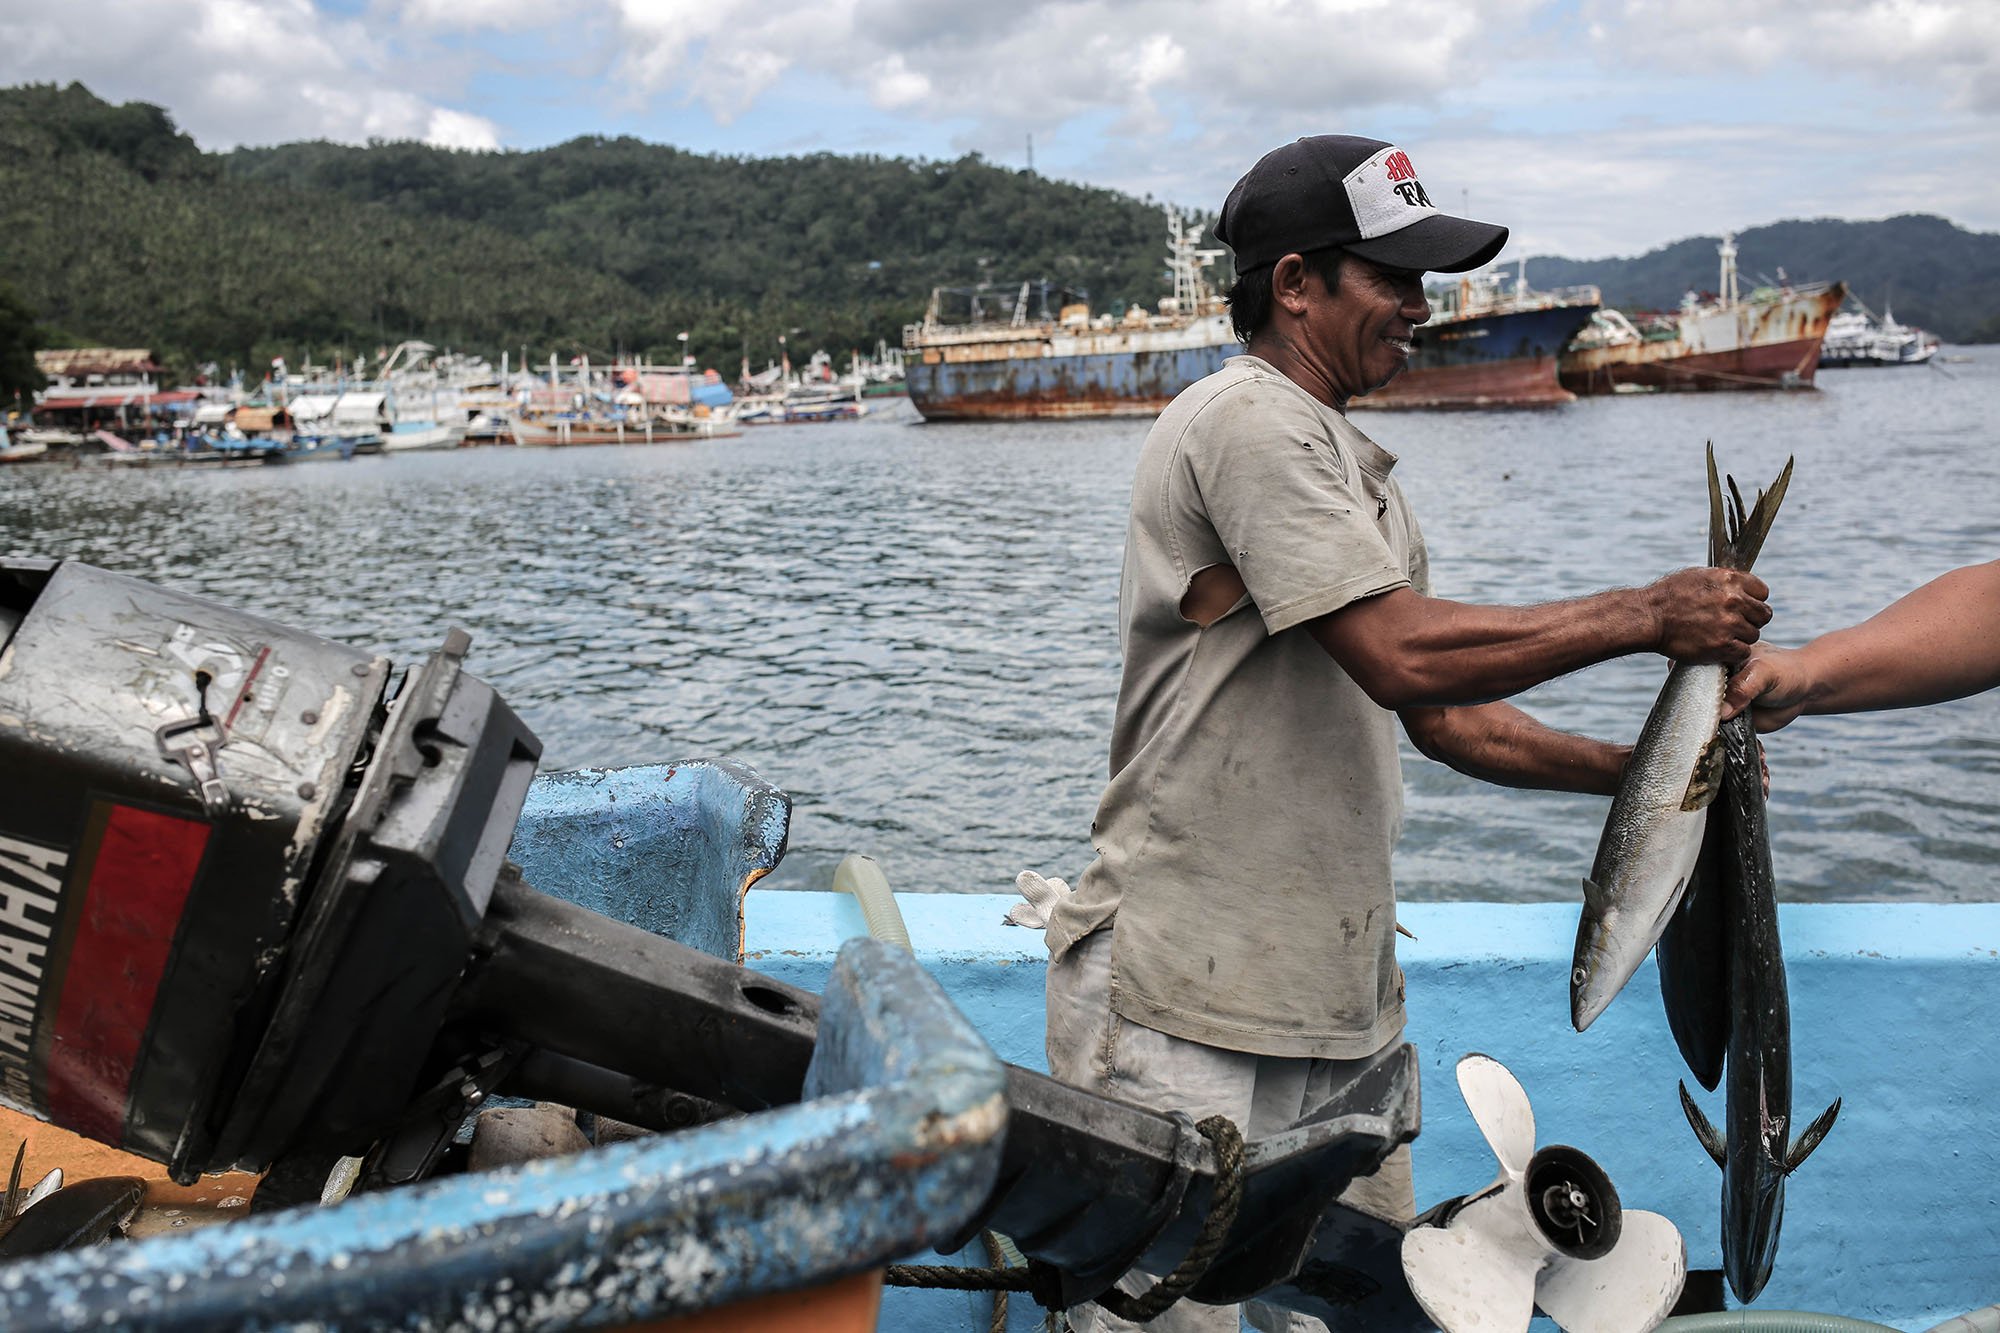 Pasokan tuna dari Indonesia itu berasal dari Bitung. Wilayah perairan yang dikenal memiliki kekayaan laut melimpah ini selalu tampak seksi di mata para pencari ikan.